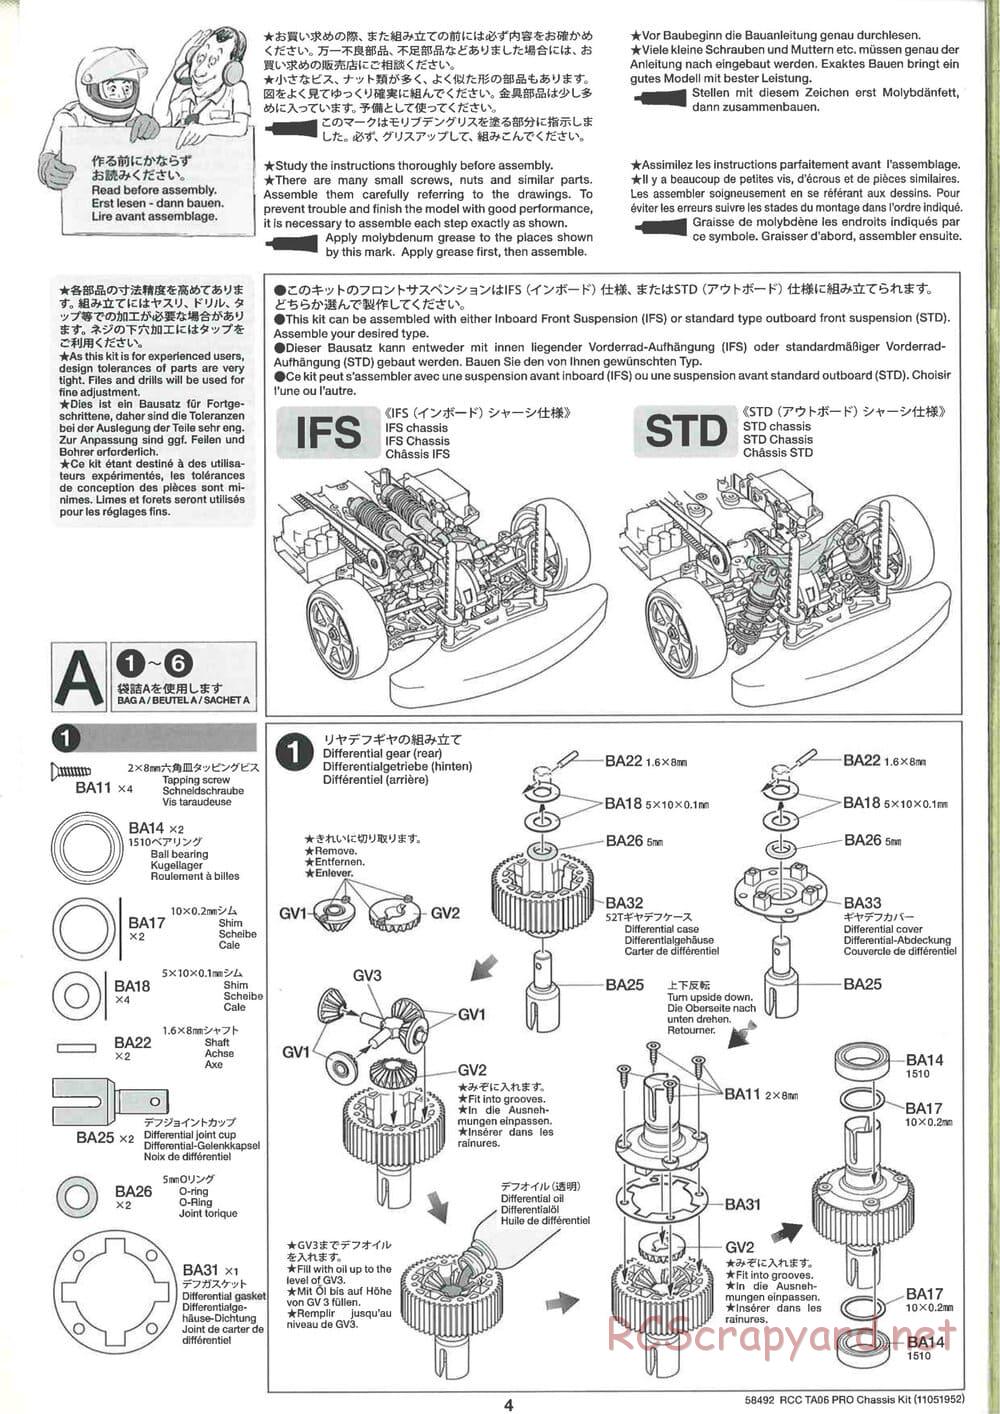 Tamiya - TA06 Pro Chassis - Manual - Page 4